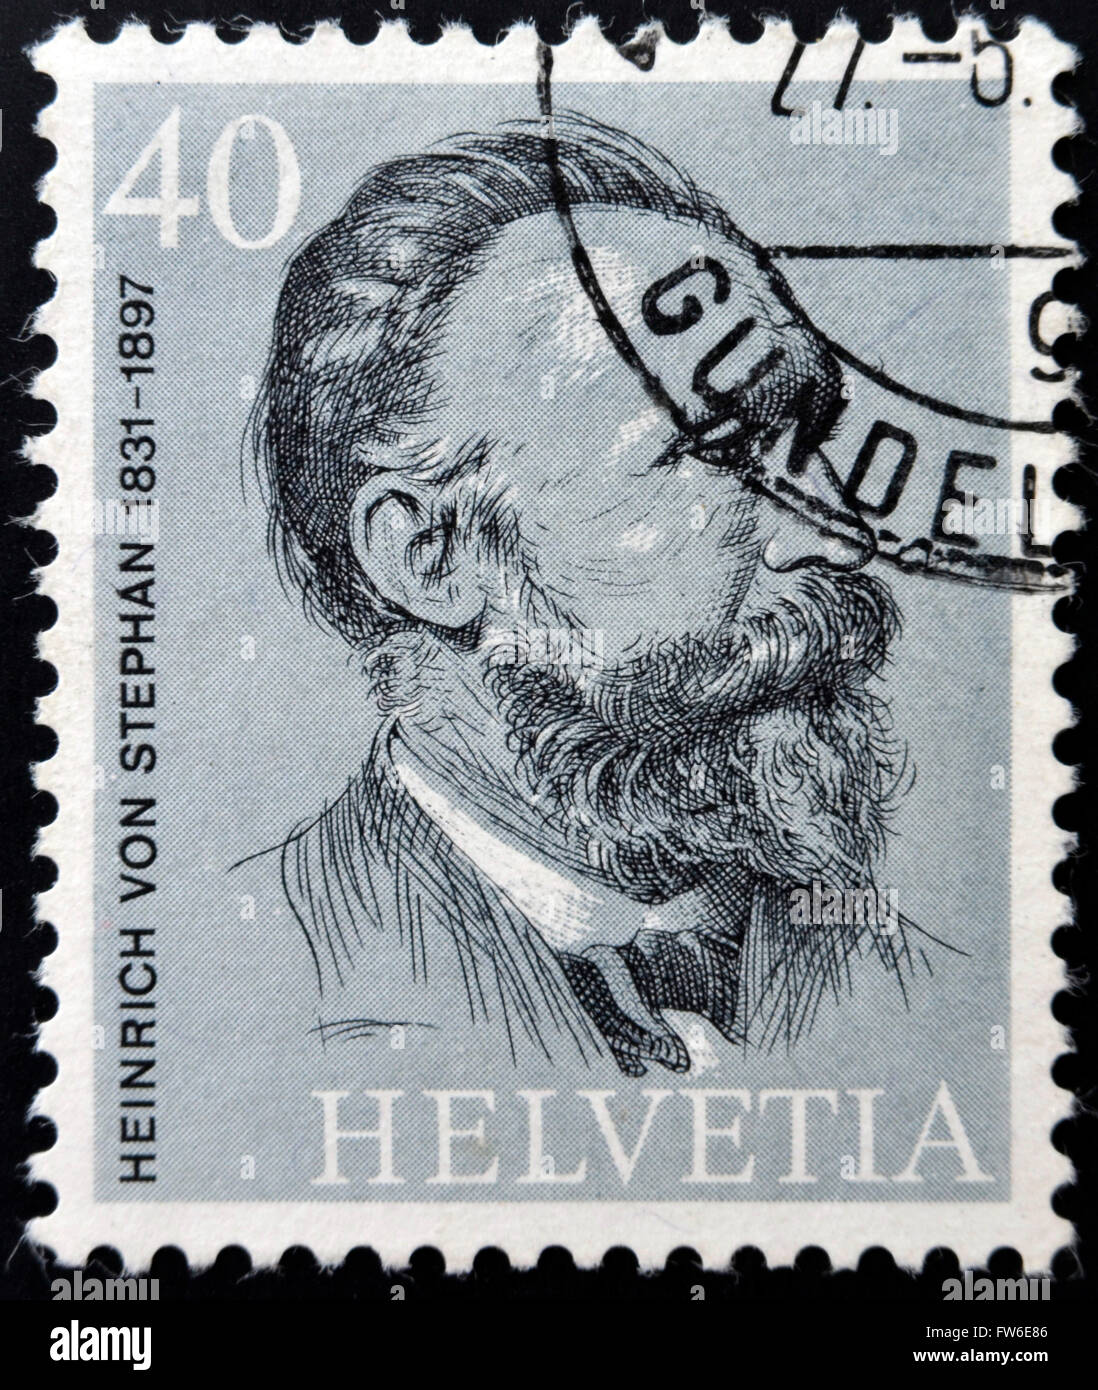 Suisse - circa 1974 : timbres en Suisse montre Heinrich VON STEPHAN, vers 1974 Banque D'Images